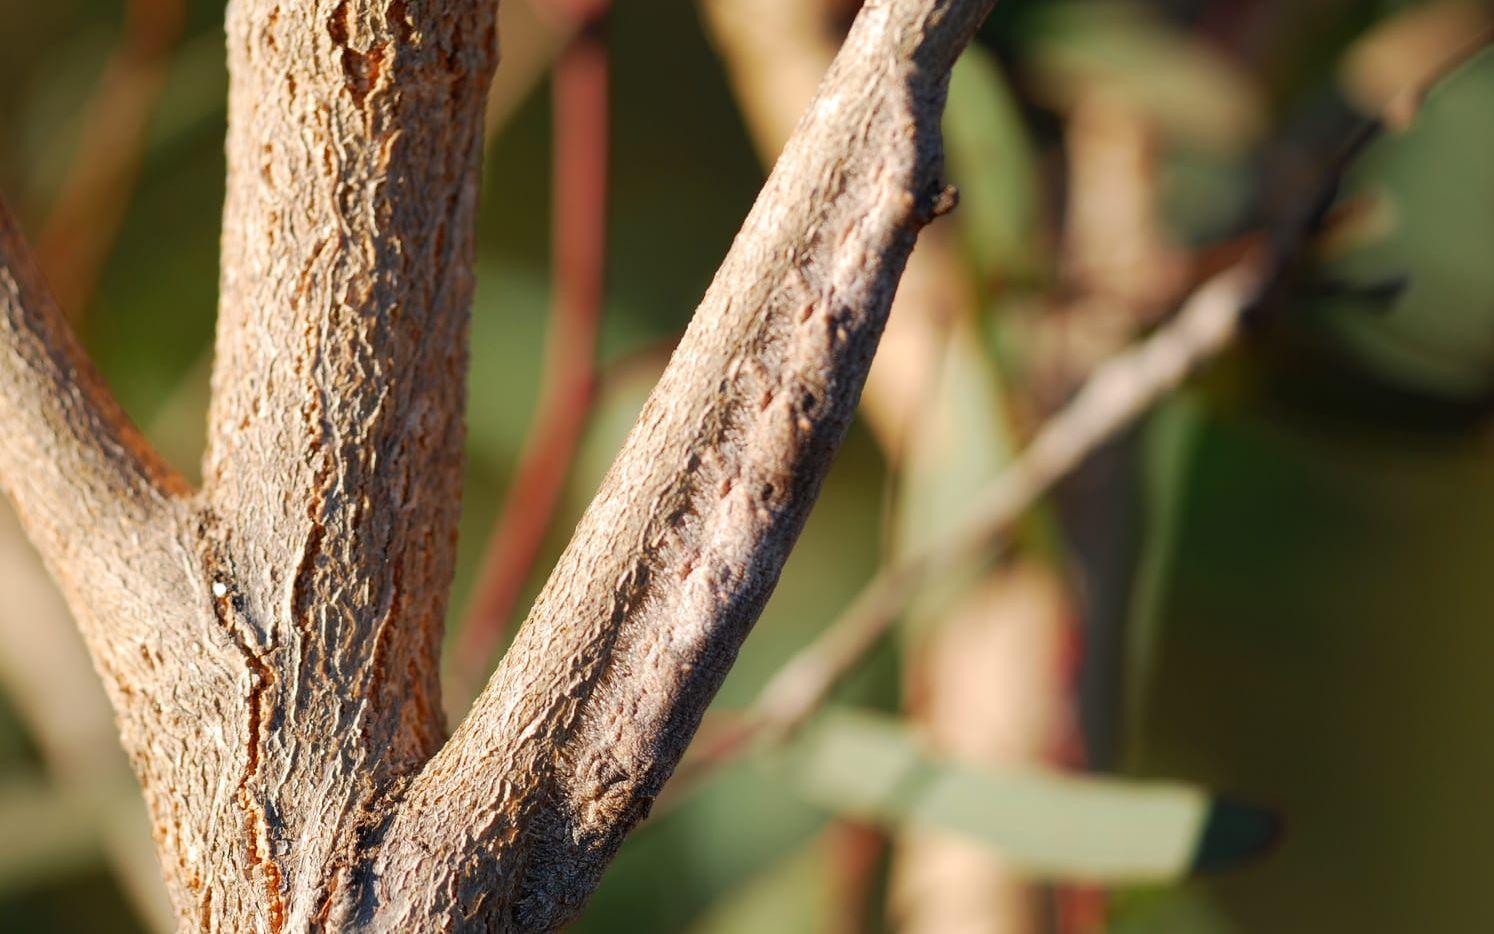 Fjärilslarv av arten Entometa fervens utanför Brisbane, Australien. Foto: <a href="https://www.flickr.com/photos/lensonlife/3857230075" target="_blank">Flickr</a>